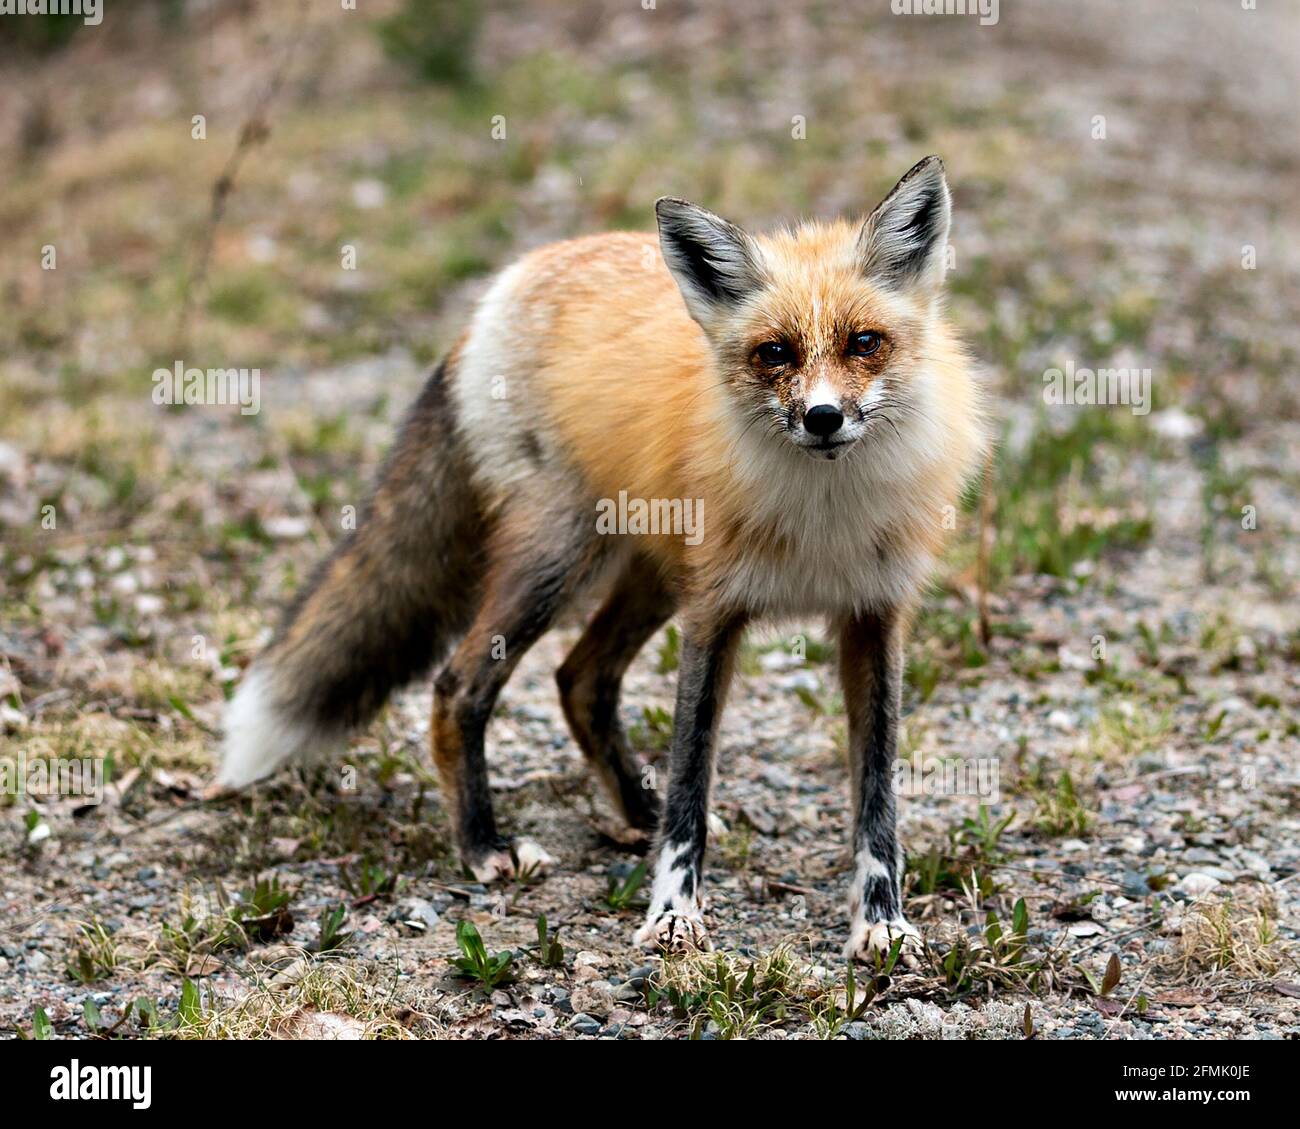 Vista laterale del profilo in primo piano della volpe rossa guardando la fotocamera con uno sfondo sfocato nel suo ambiente e habitat. Immagine FOX. Immagine. Verticale. Foto Stock